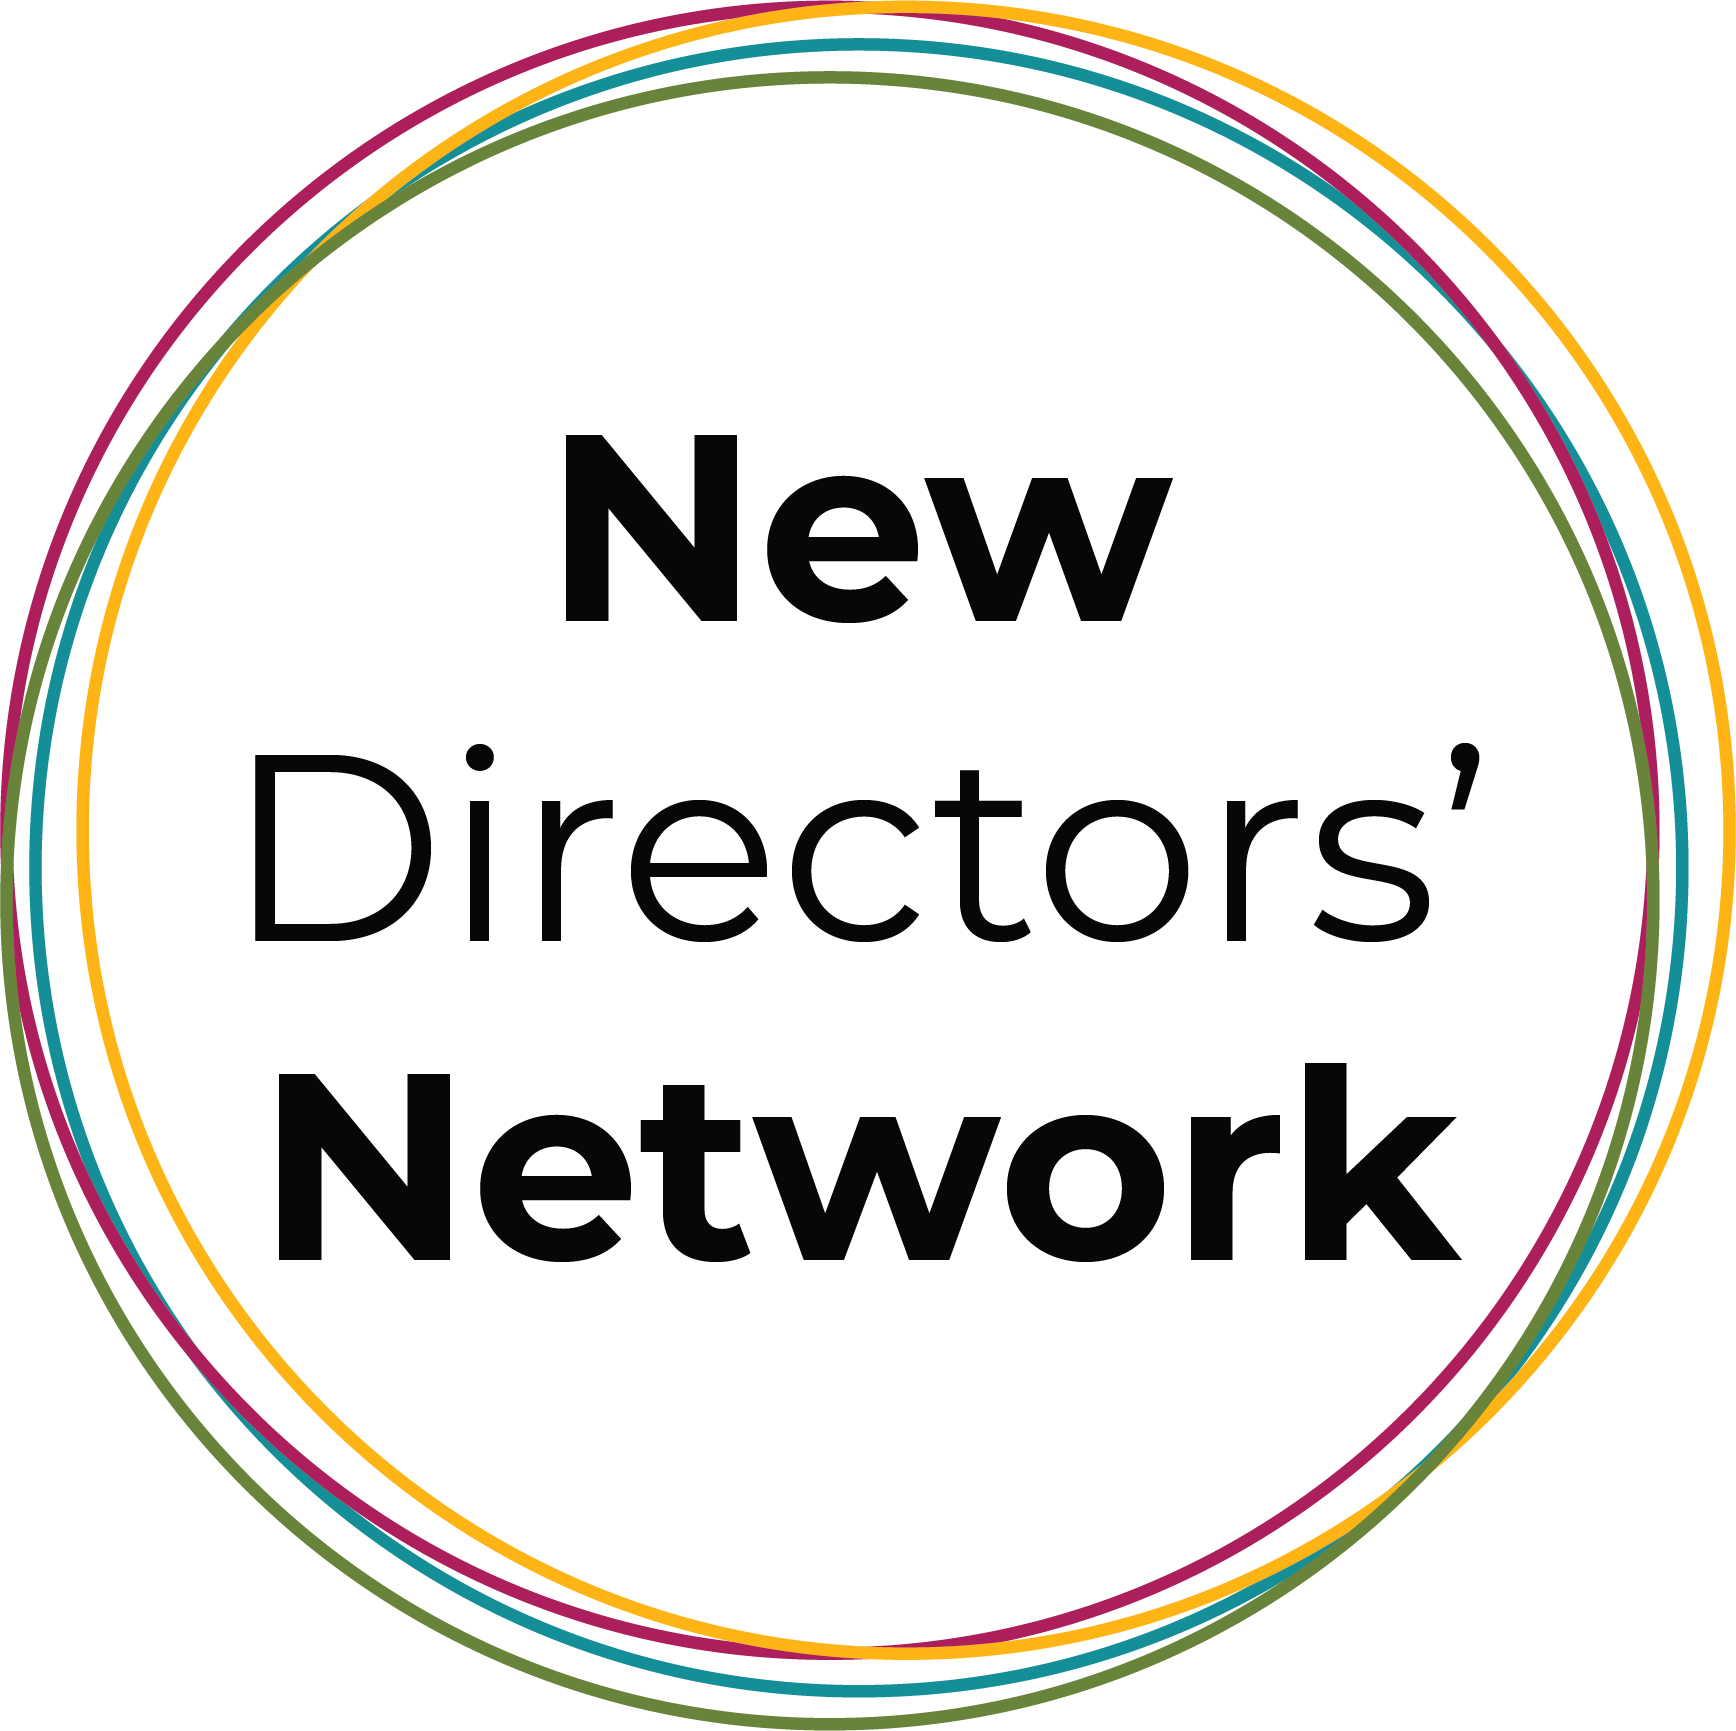 New Directors' Network